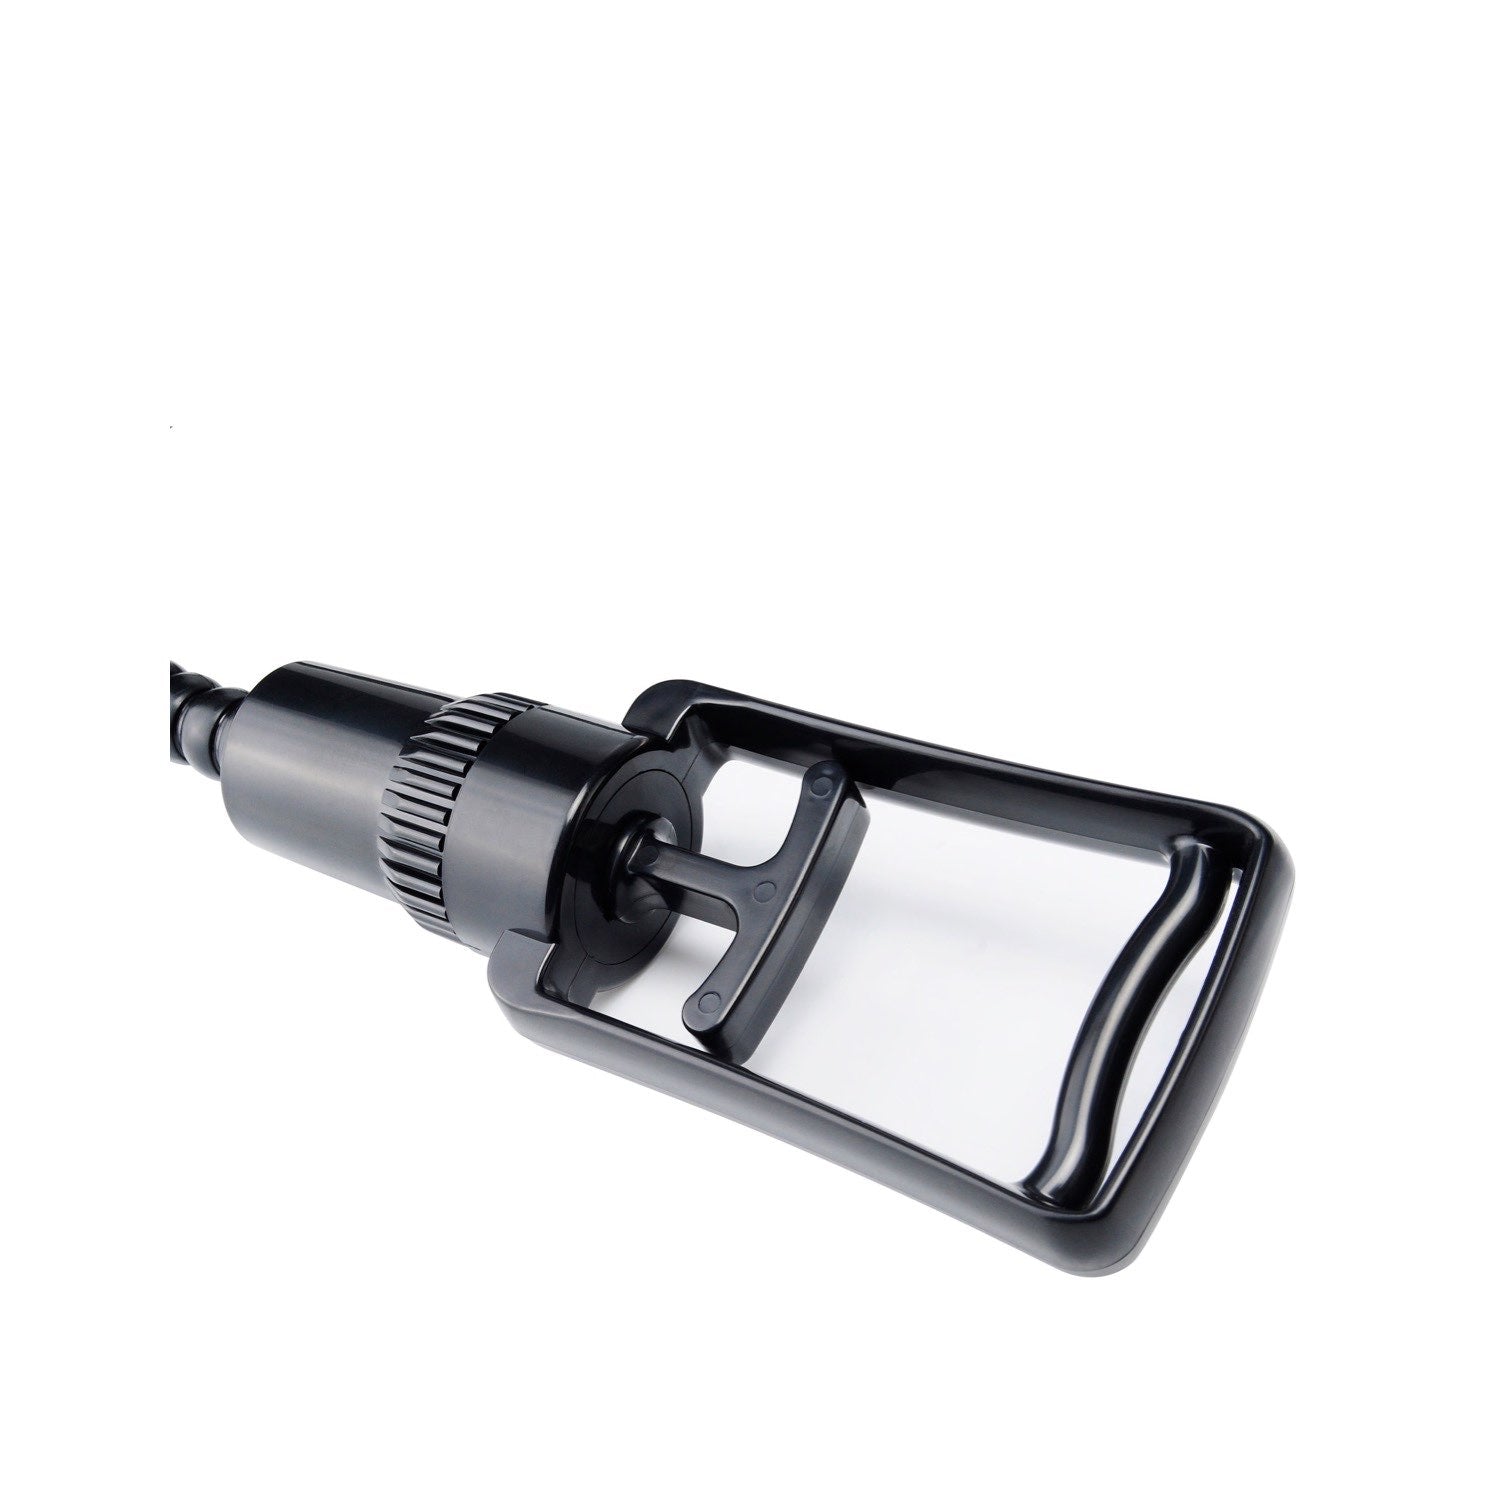 泵沃克斯 XXL Maximizer 泵 - 黑色/透明阴茎泵 by Pipedream